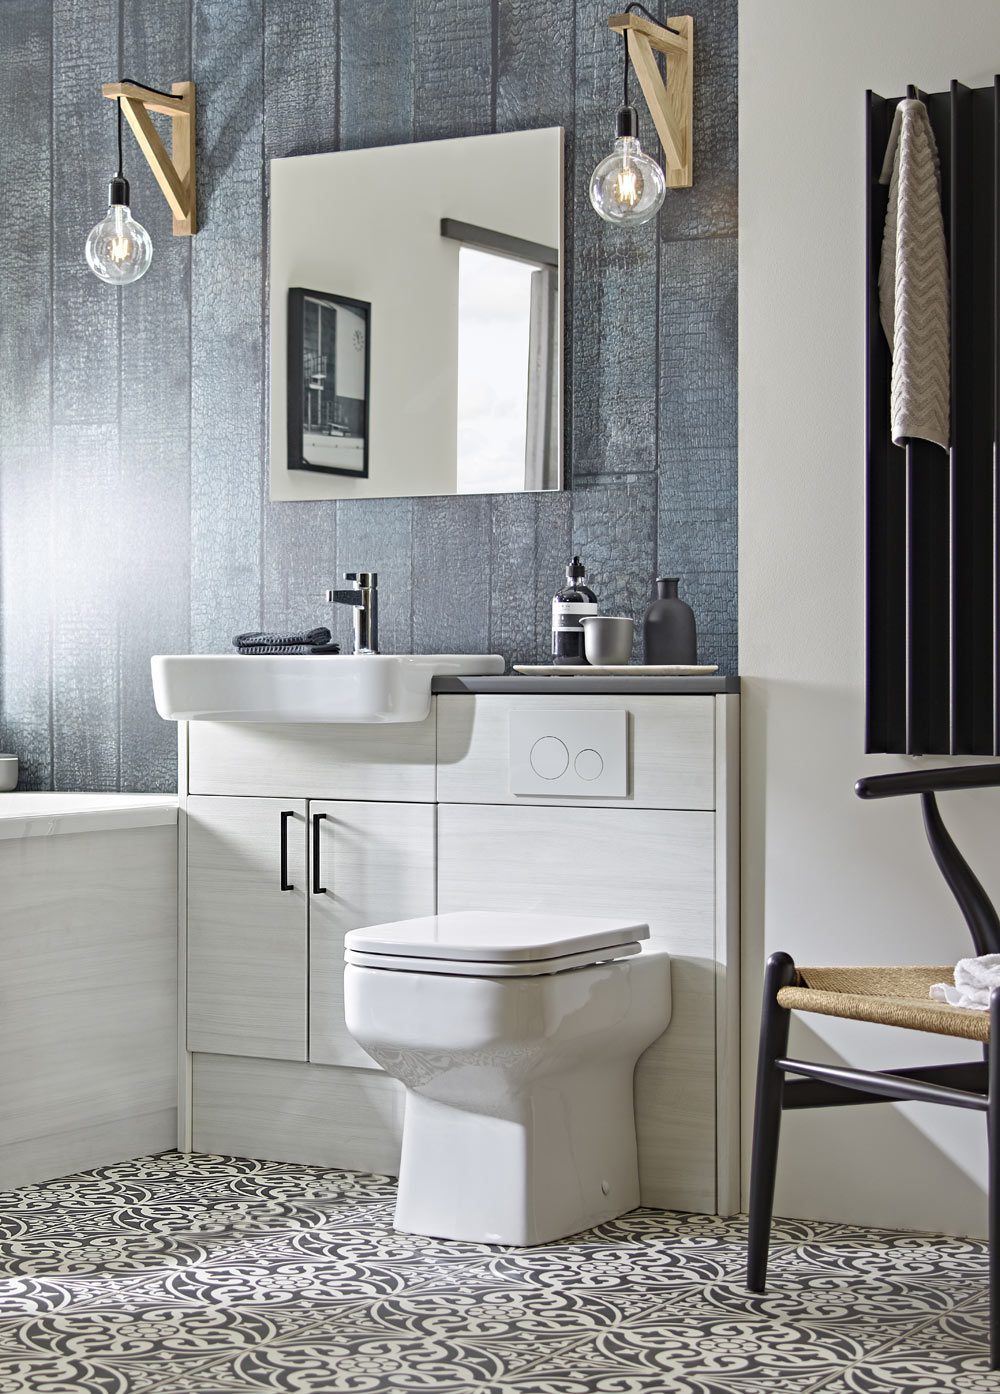 Aruba Fitted Bathroom Furniture | btw - baths tiles woodfloors